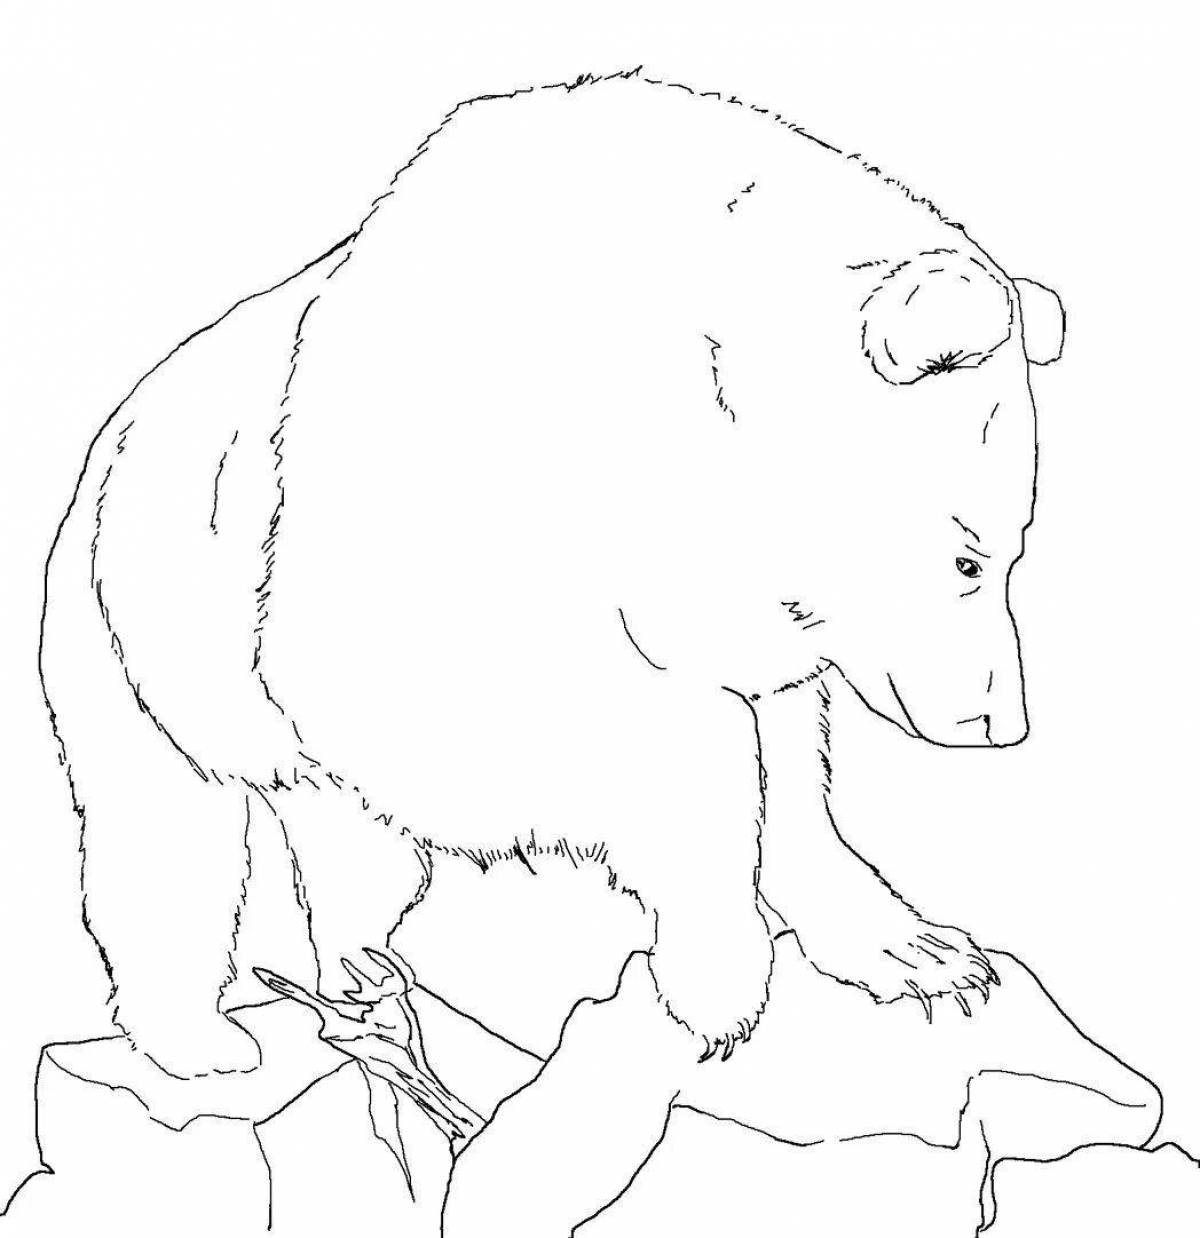 Coloring cute bear